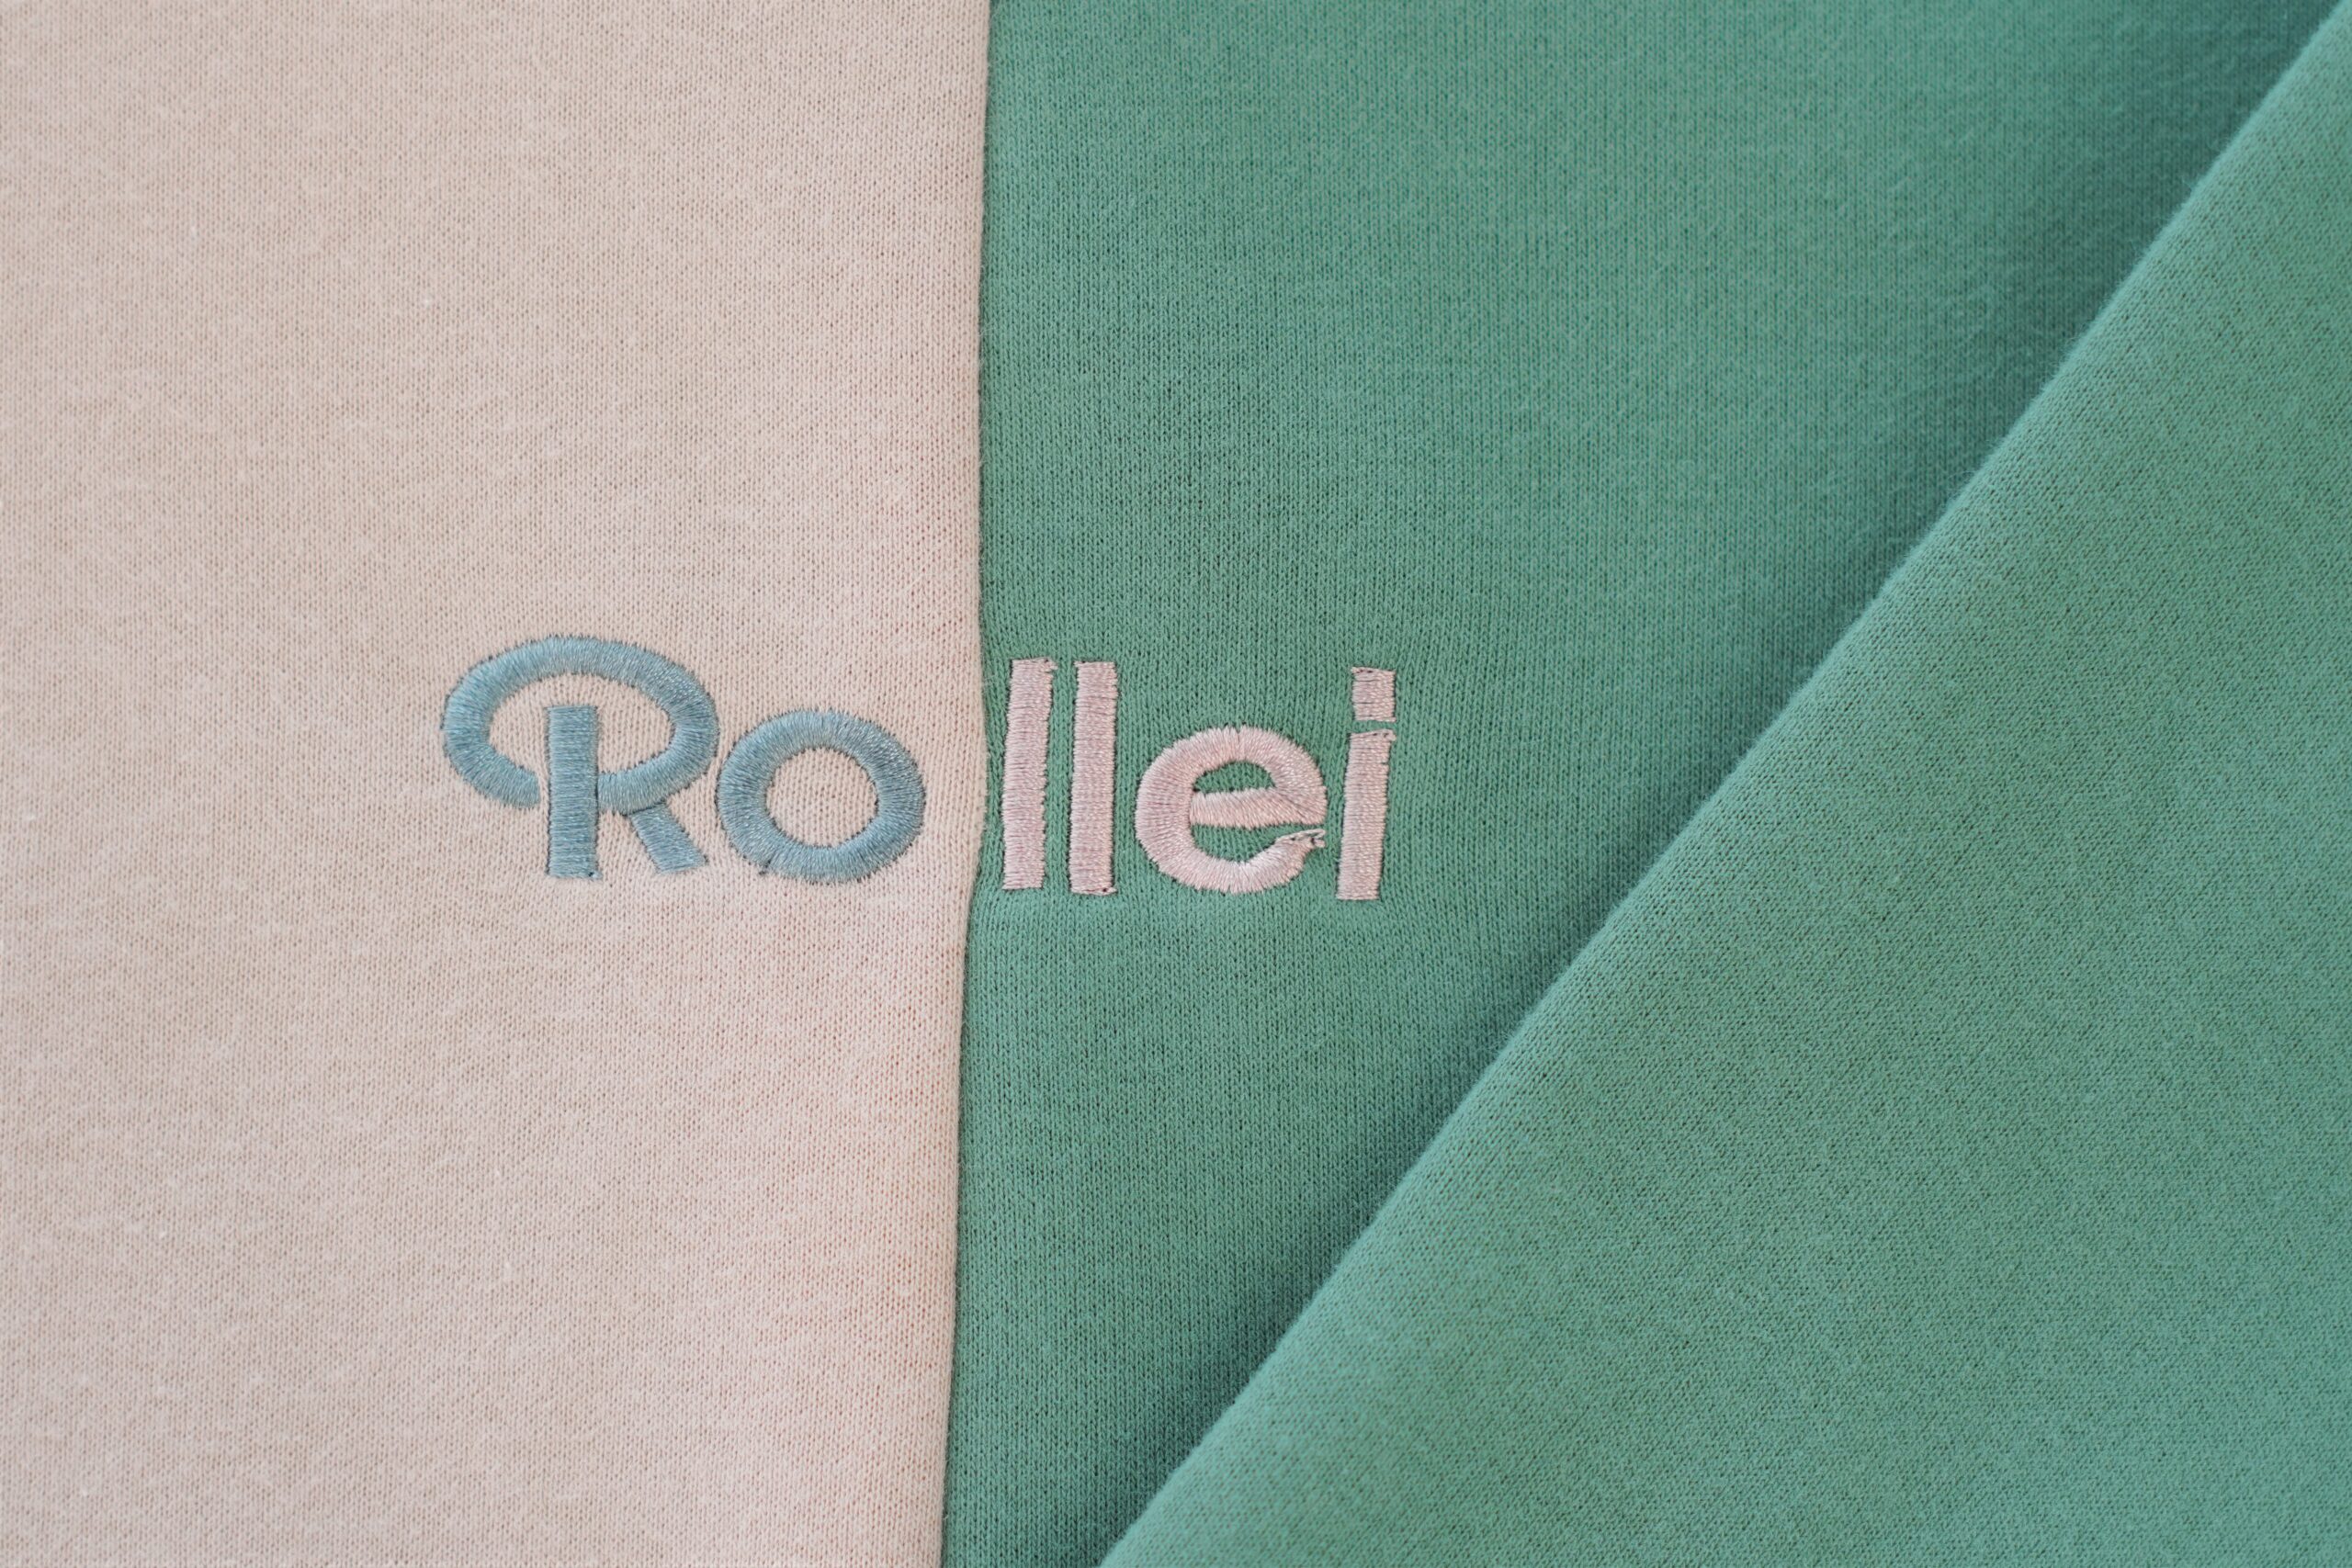 ローライ(Rollei)”公式プロダクト